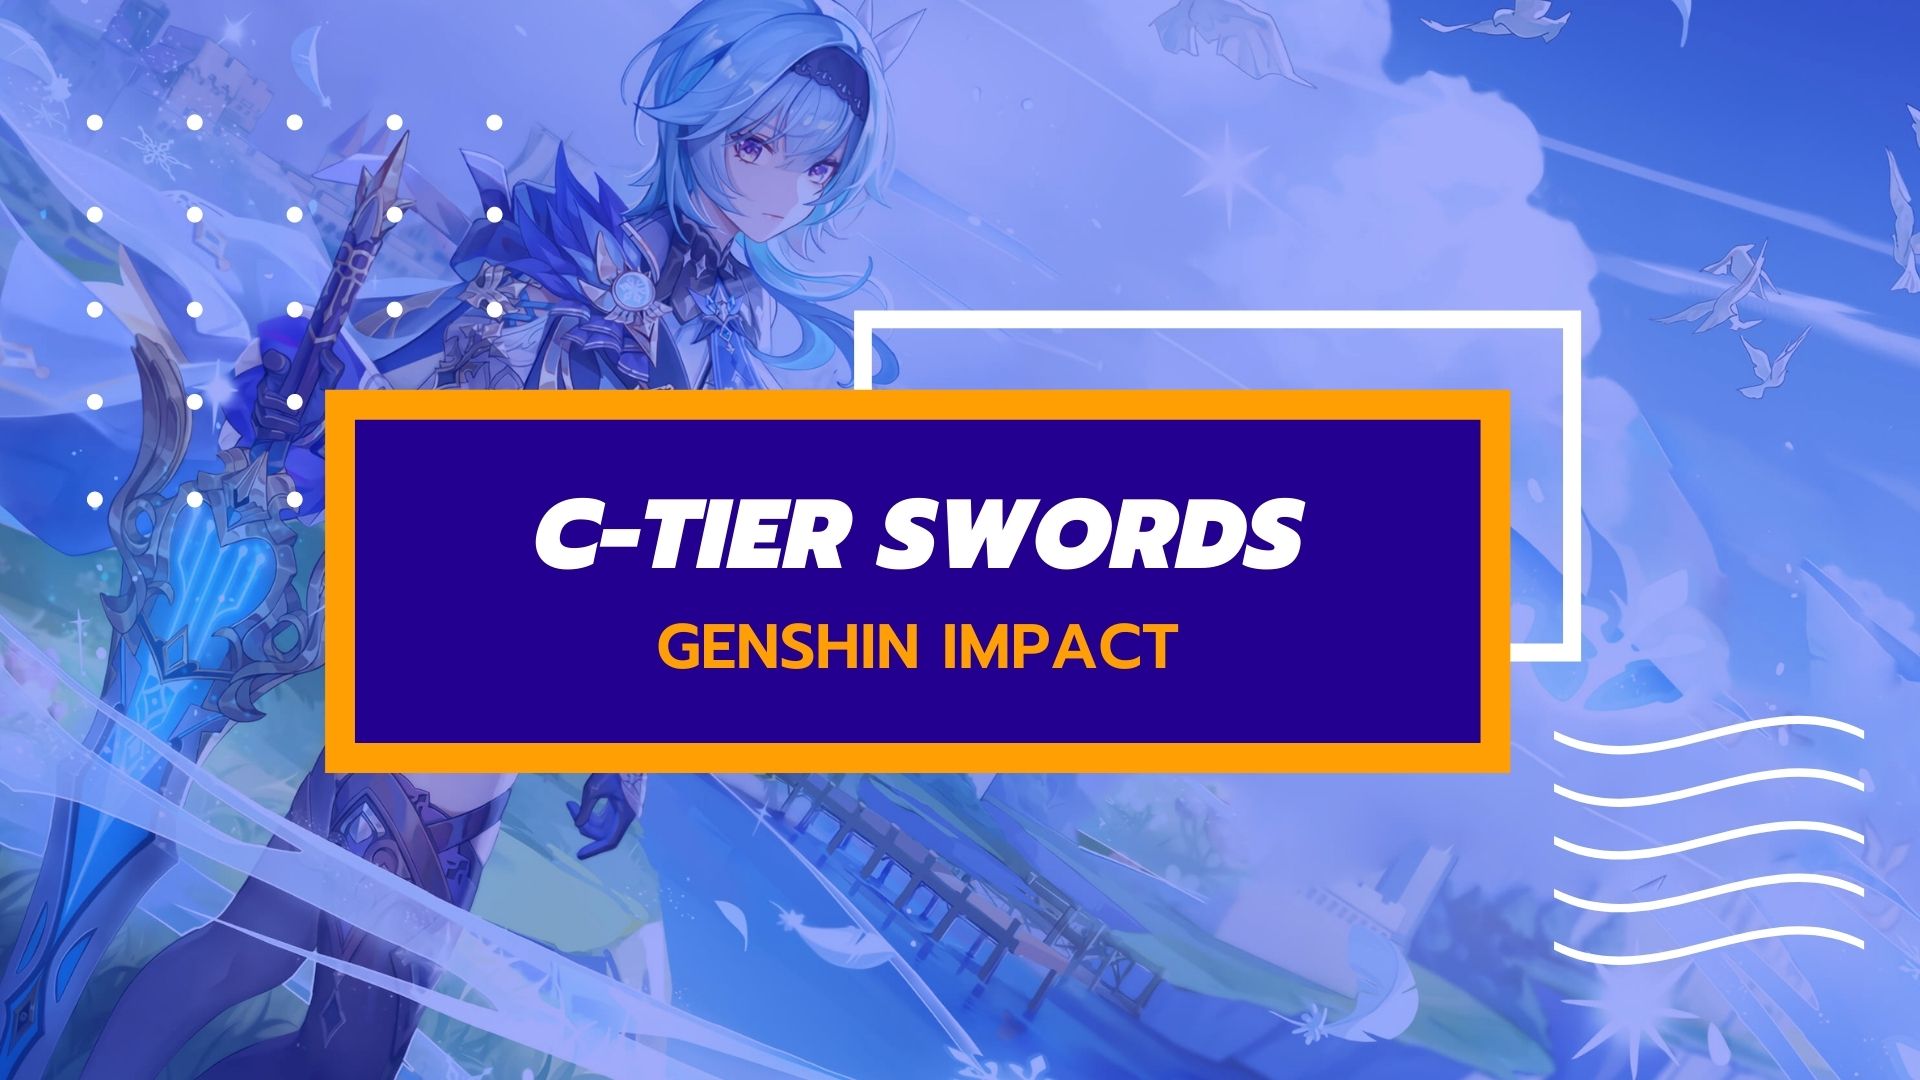 Elenco dei livelli delle armi Genshin Impact - Livello C